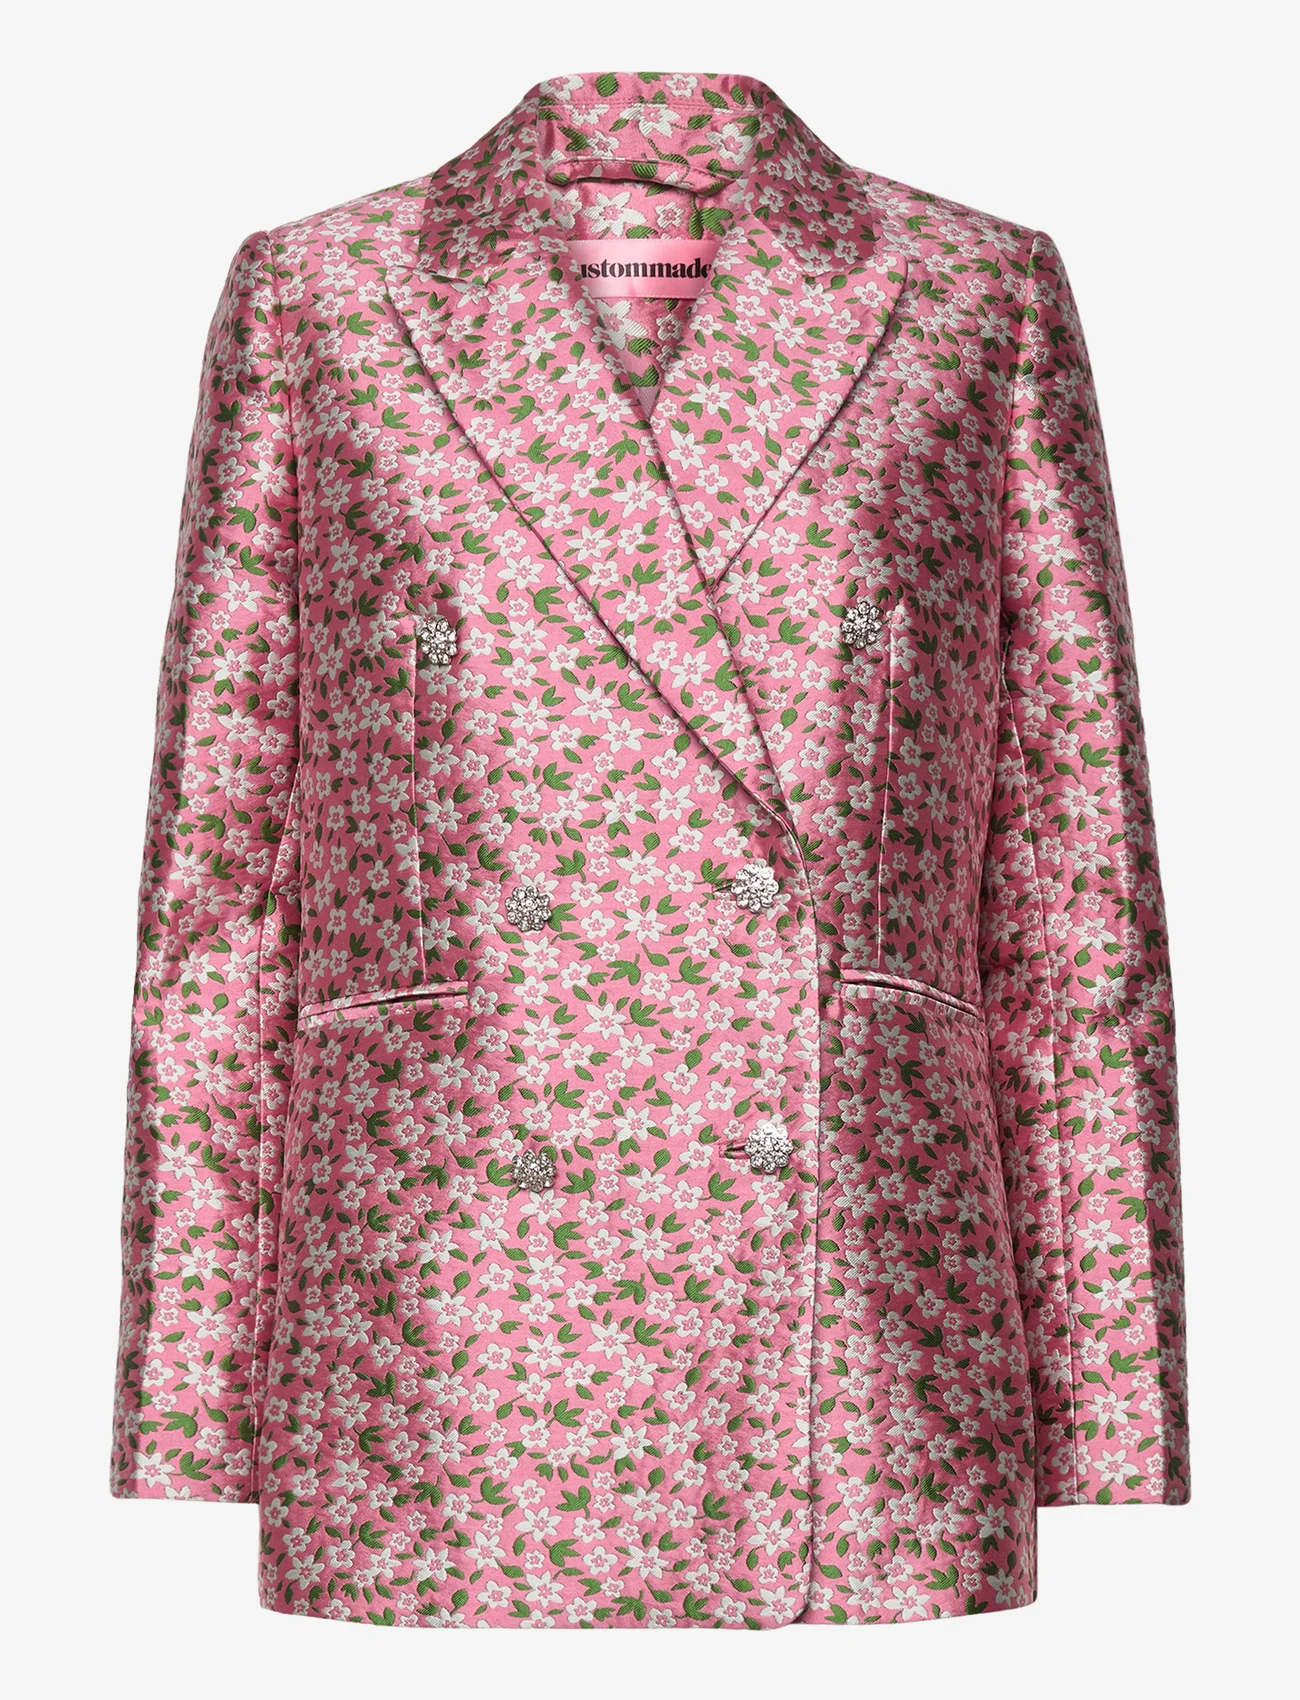 Custommade - Firdos Jacquard - feestelijke kleding voor outlet-prijzen - 157 sea pink - 0